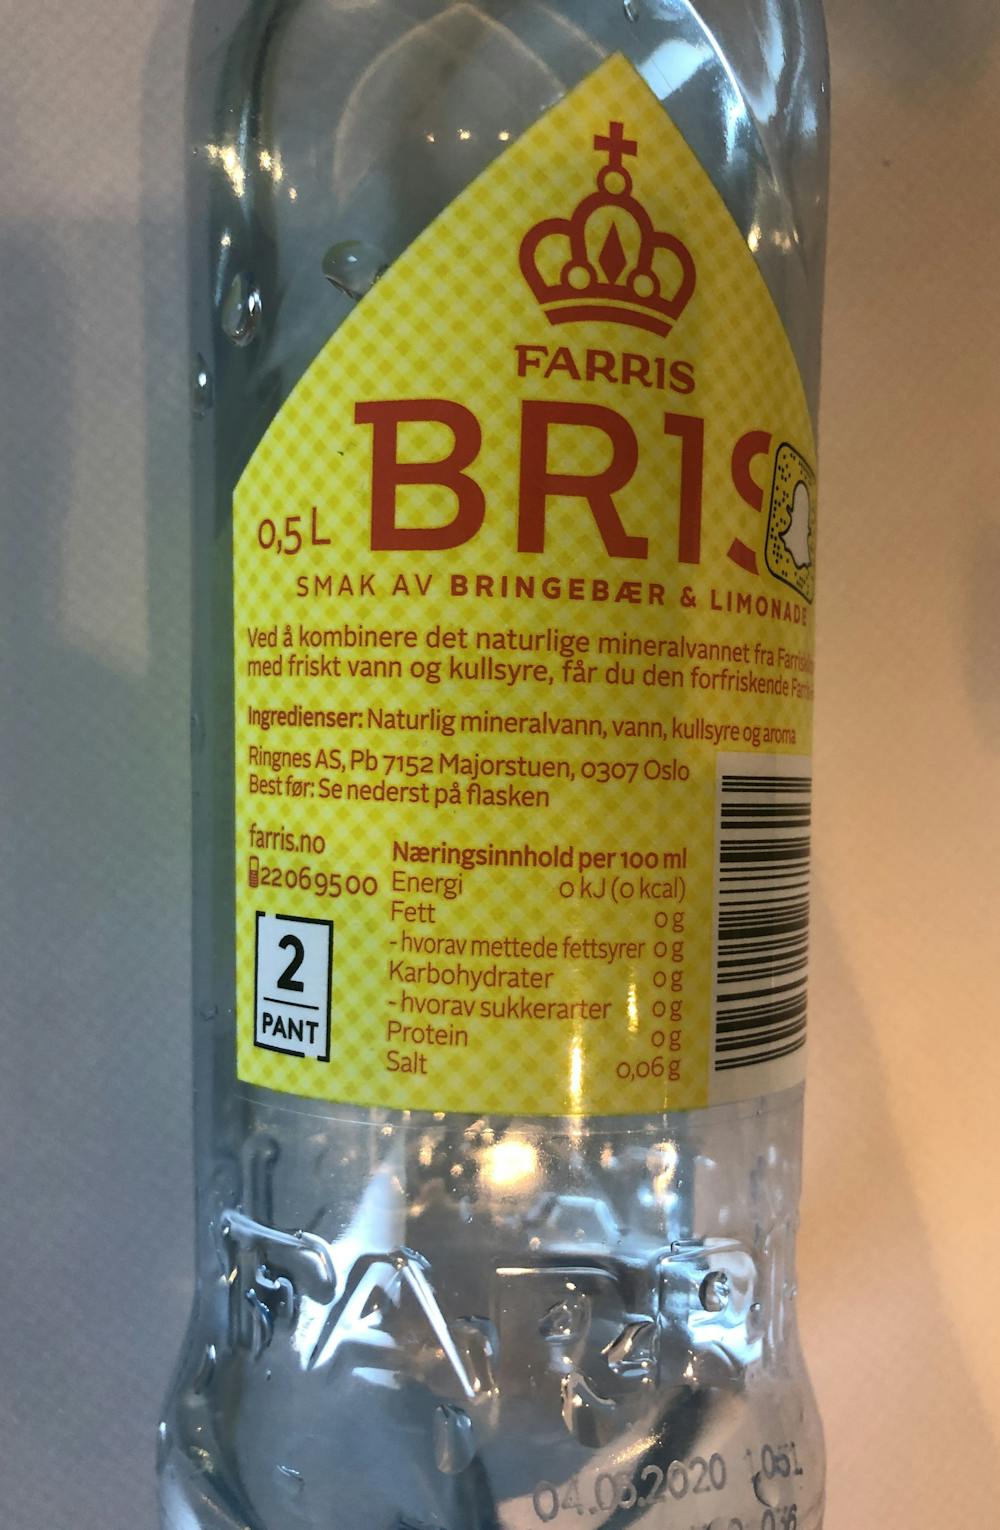 Ingredienslisten til Farris Bris med bringebær og limonade